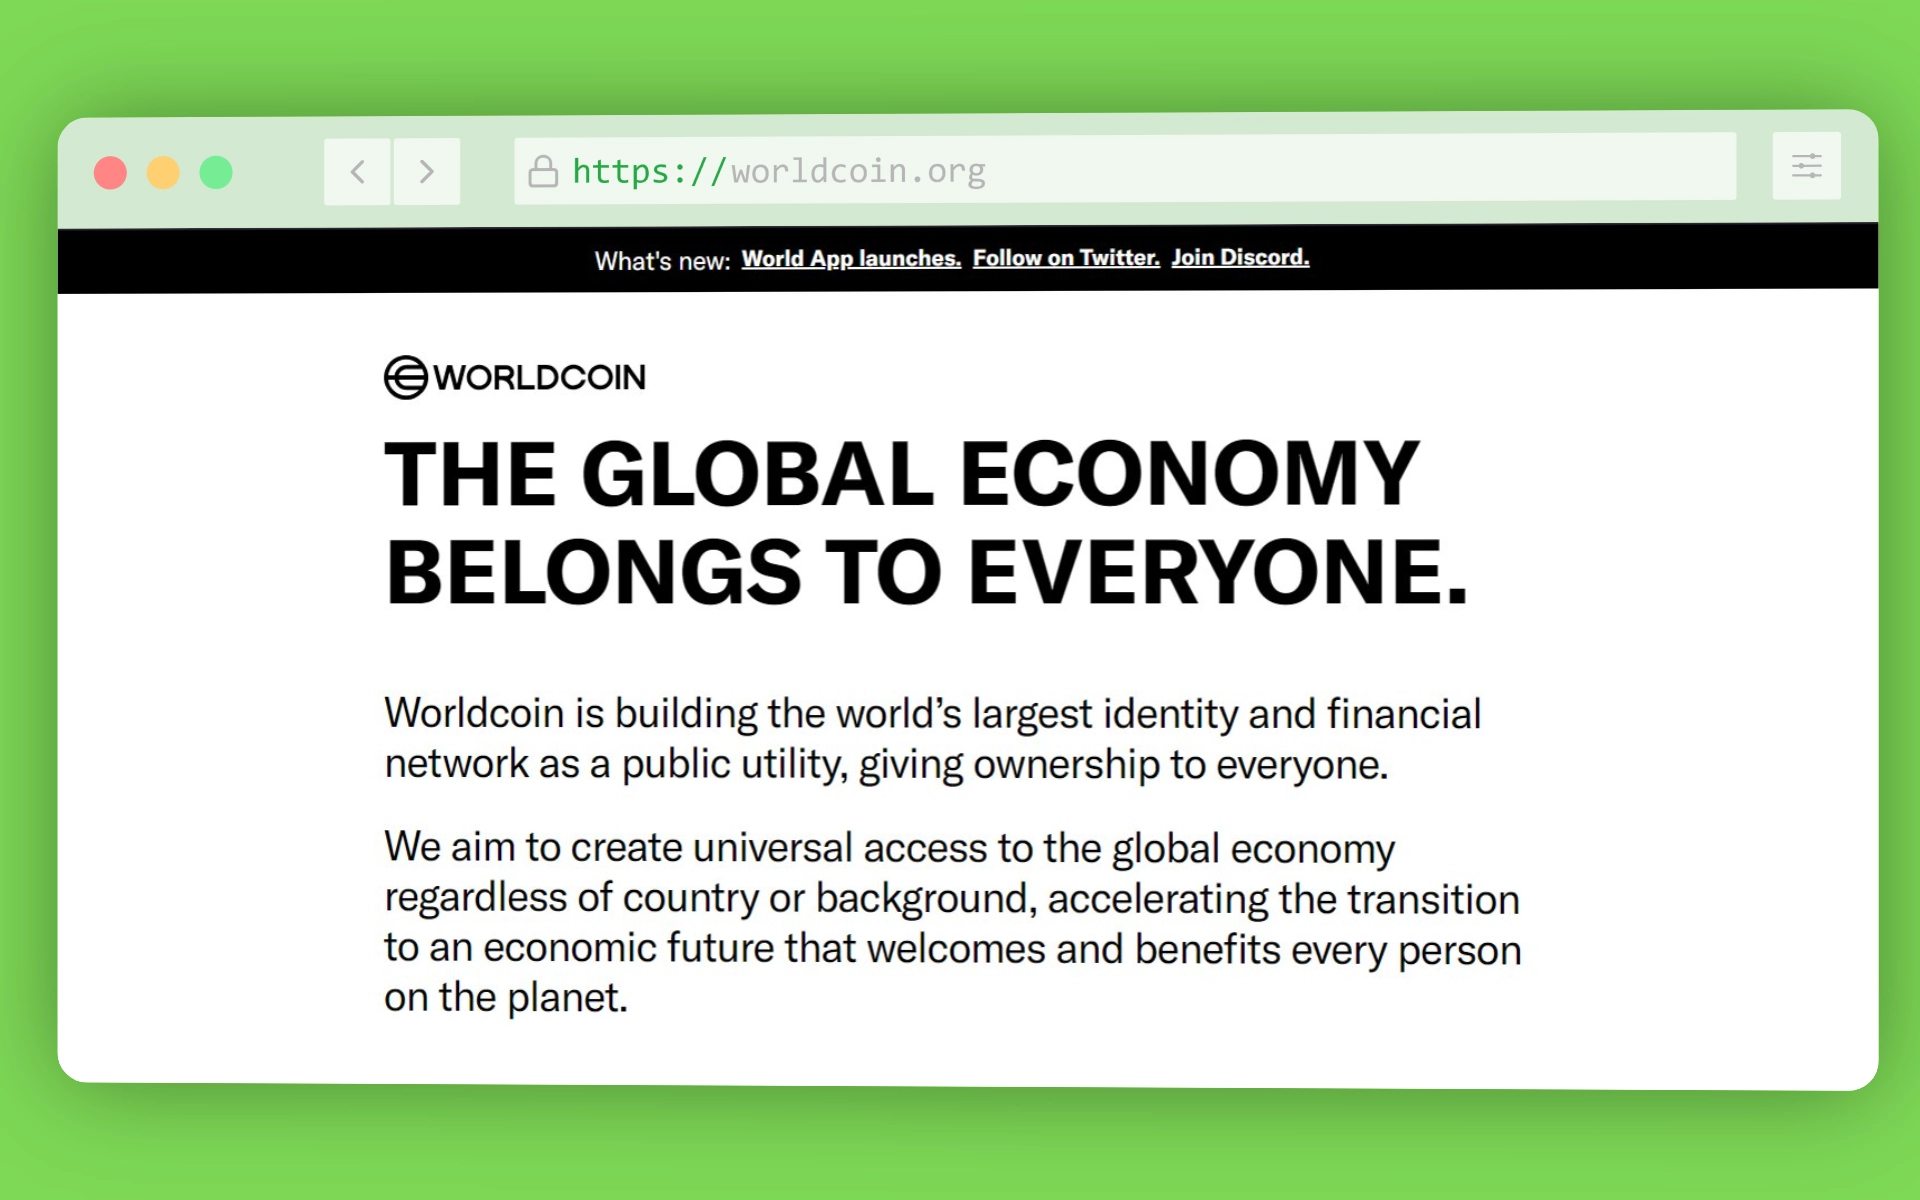 Sitio web oficial de Worldcoin.